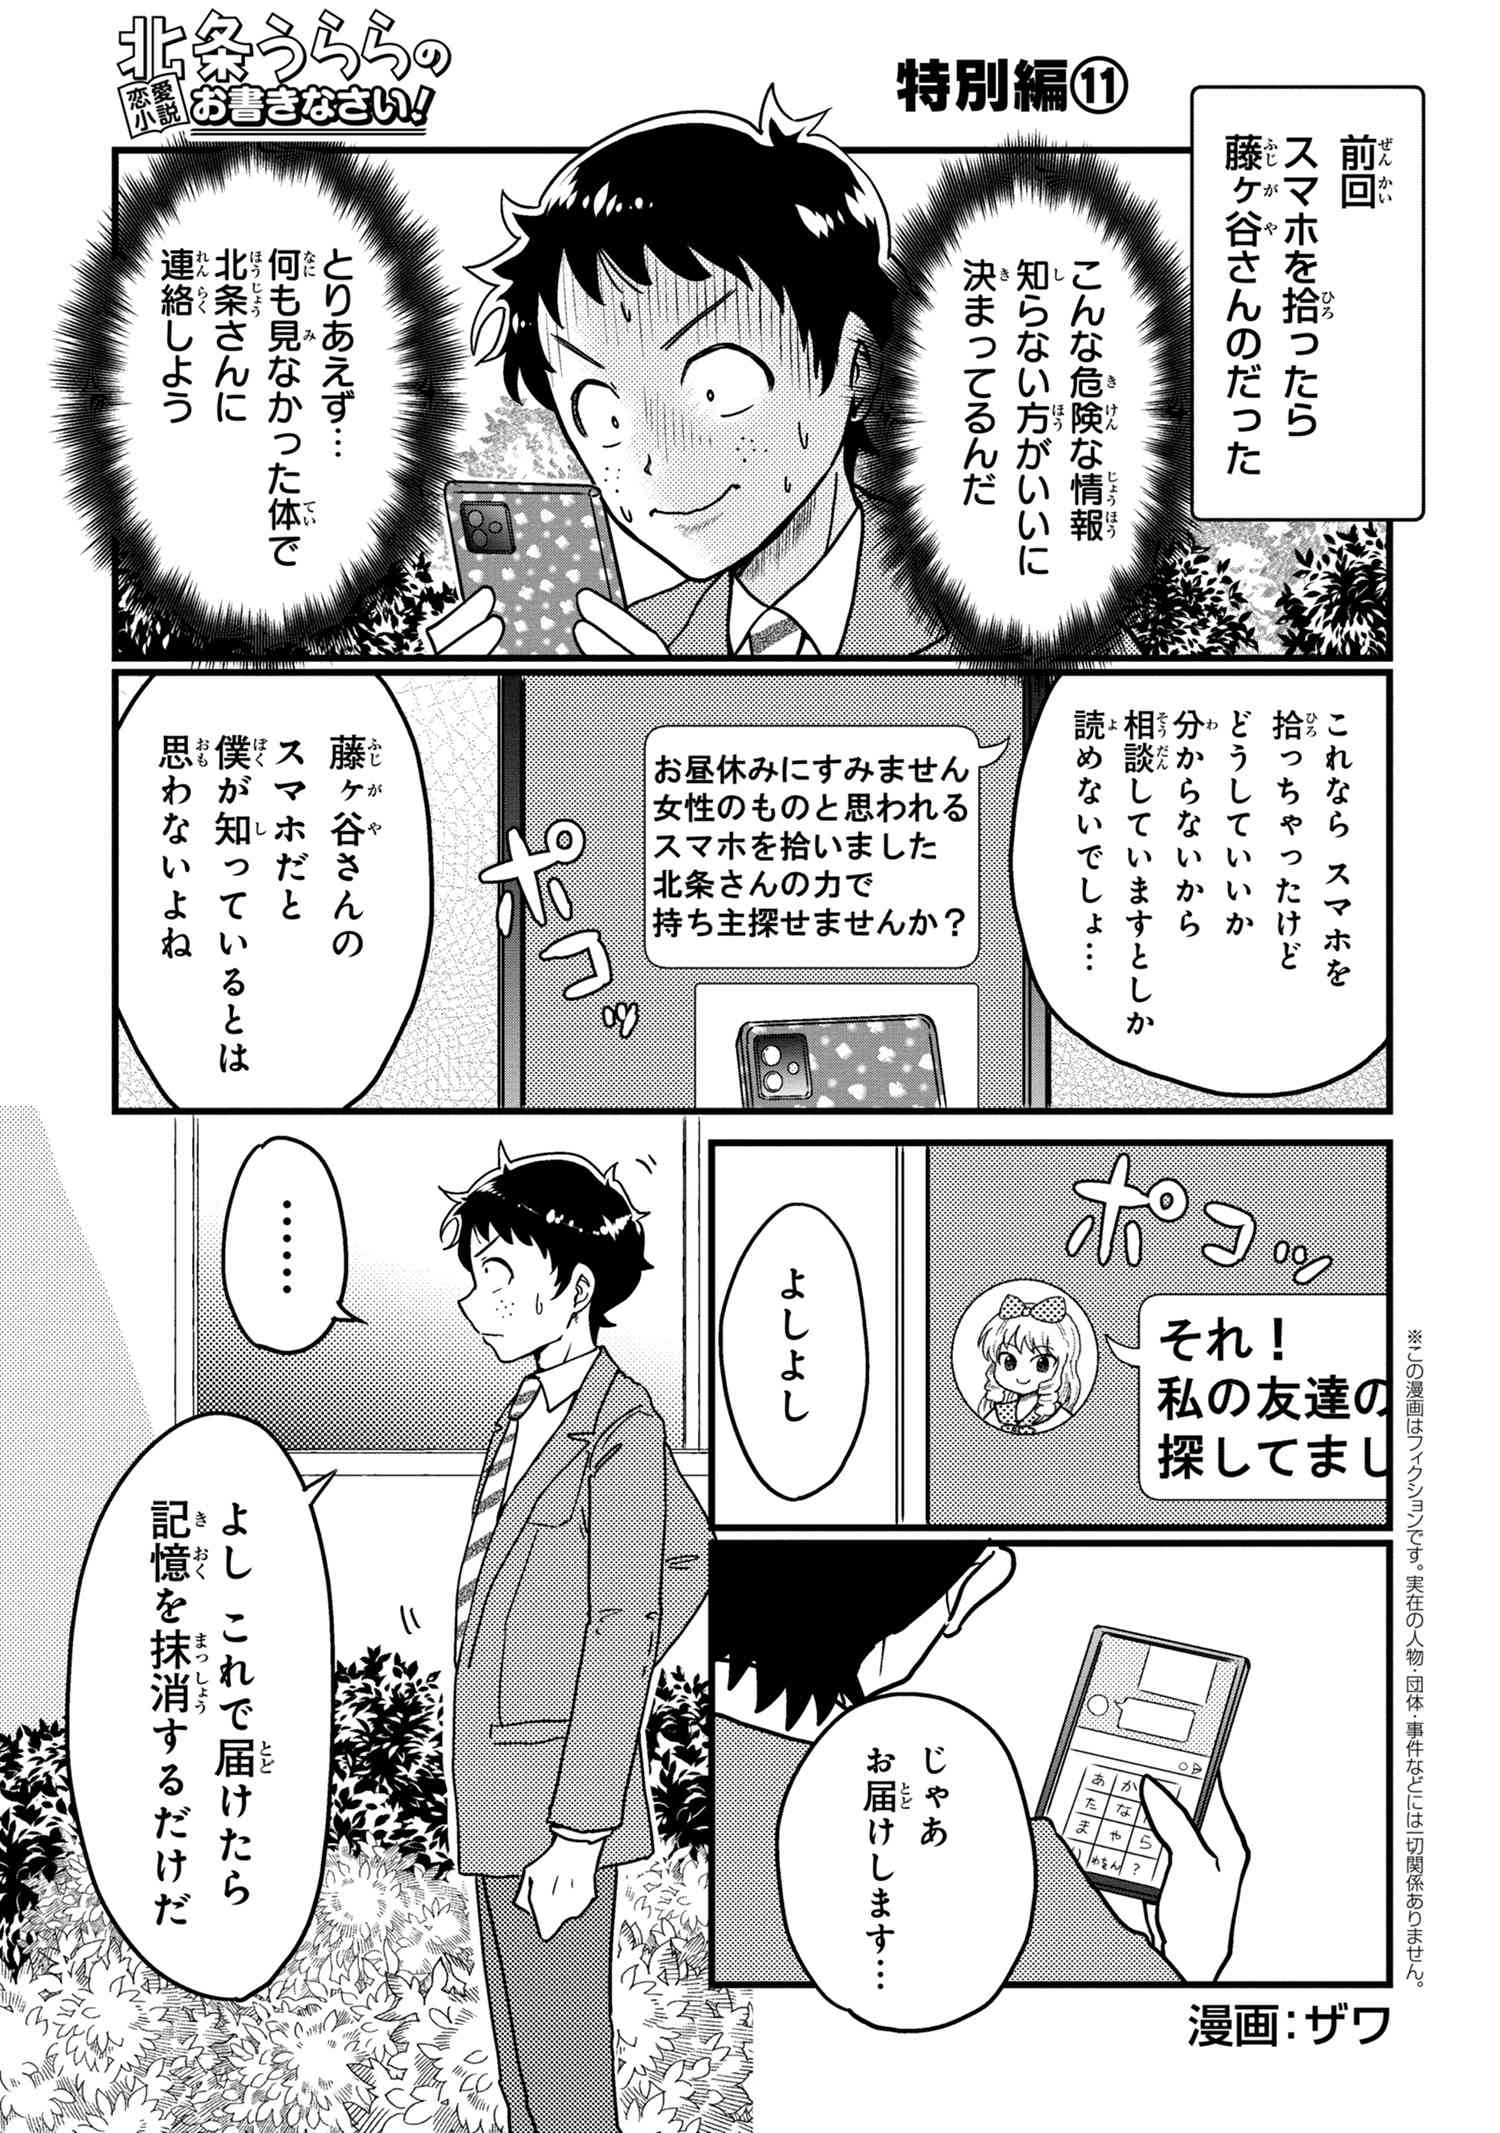 Houjou Urara no renai shousetsu o kaki nasai! - Chapter 11 - Page 1